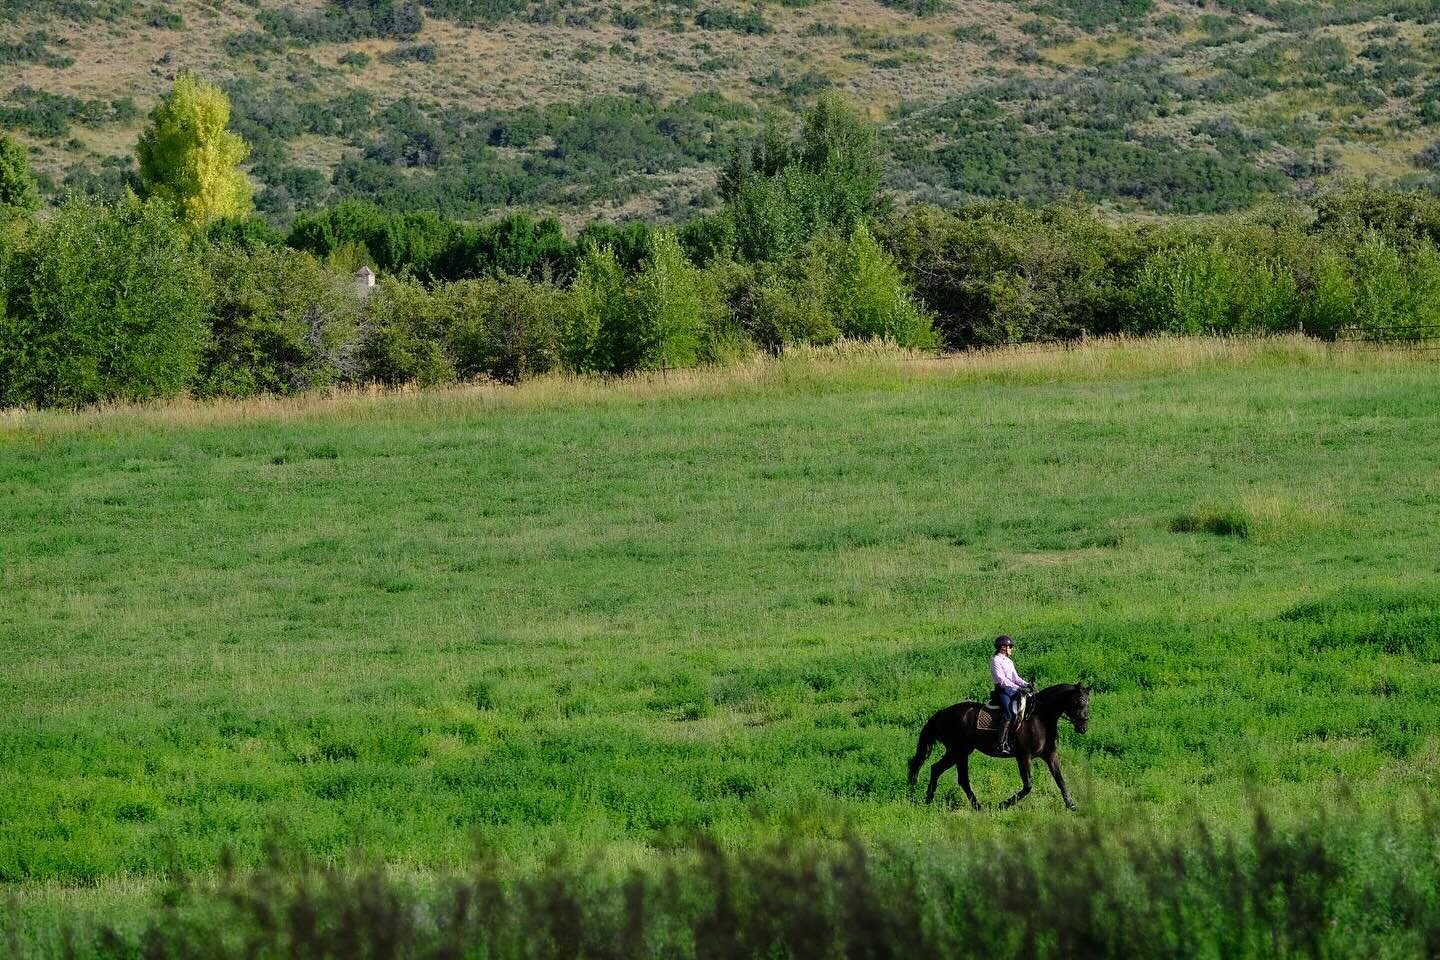 Dreaming of pasture rides on summer days. 🩷
.
.
.
#hanoveriansofinstagram #dressage #dressagerider #trailride #ausreiten #dressur #dressurreiter #utahisrad